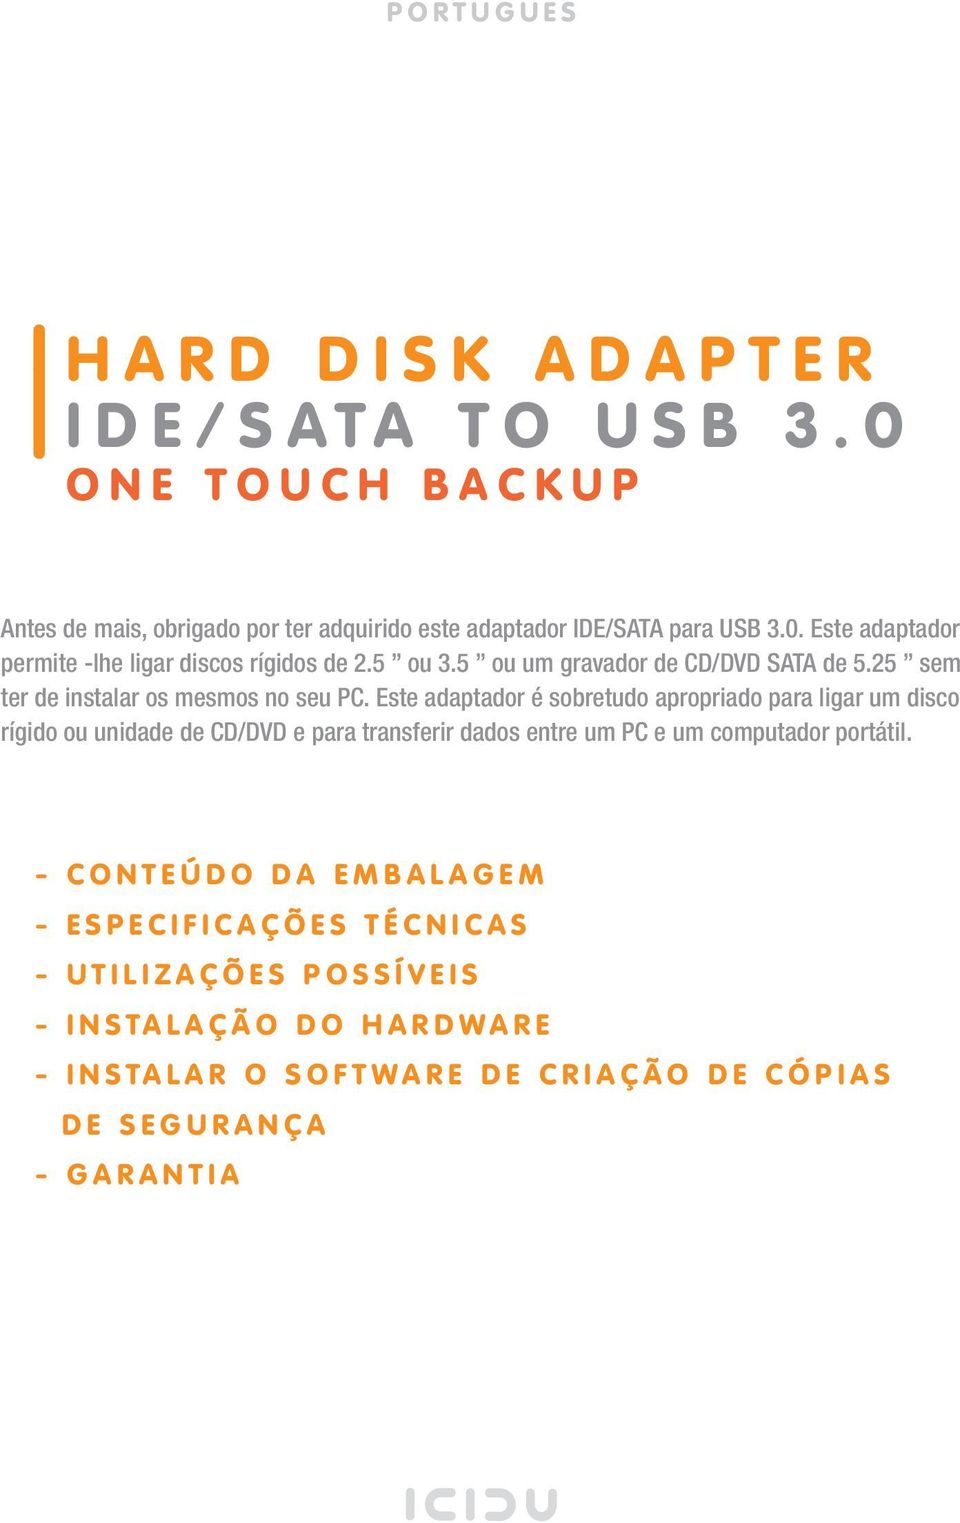 Este adaptador é sobretudo apropriado para ligar um disco rígido ou unidade de CD/DVD e para transferir dados entre um PC e um computador portátil.